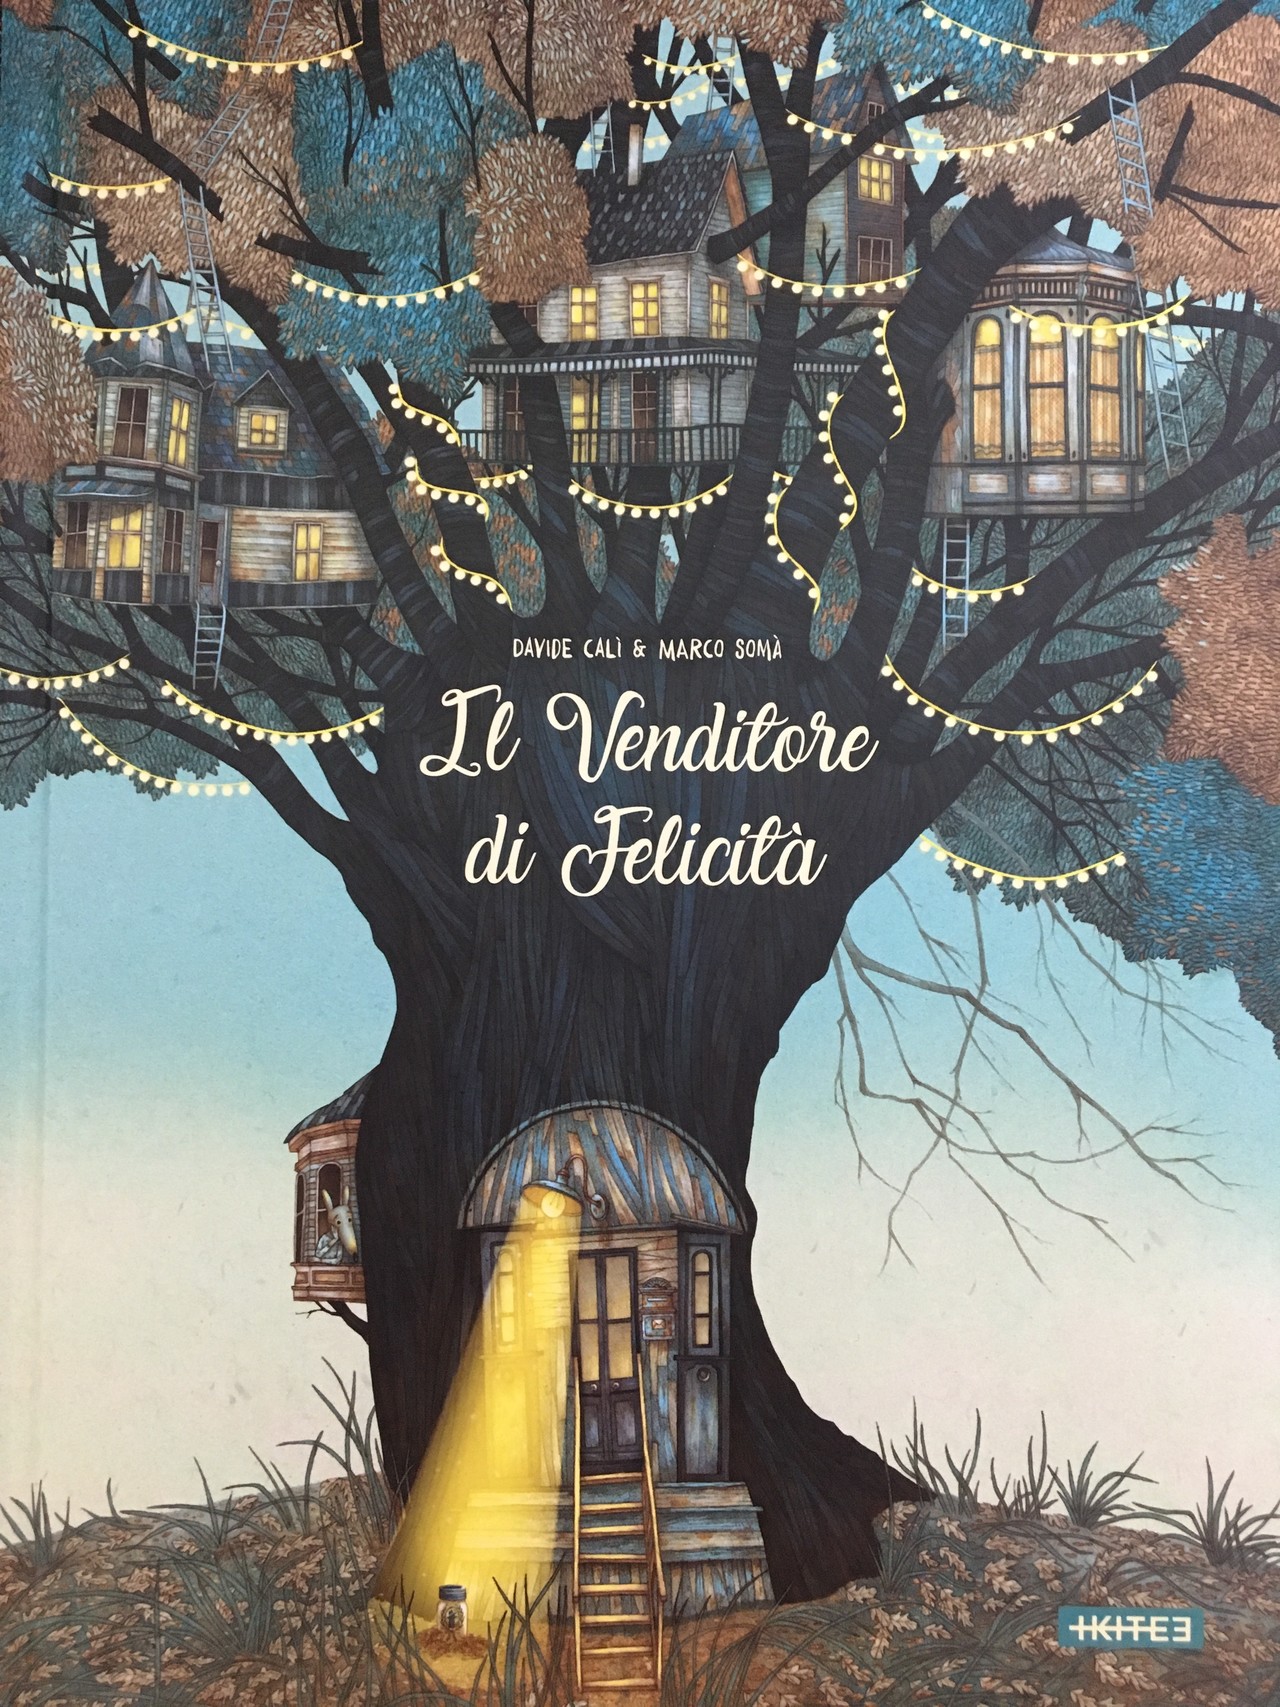 絵本で学ぶイタリア語 4 Il Venditore Di Felicita 幸せを売る者 仮題 チェルビアット絵本店 Note